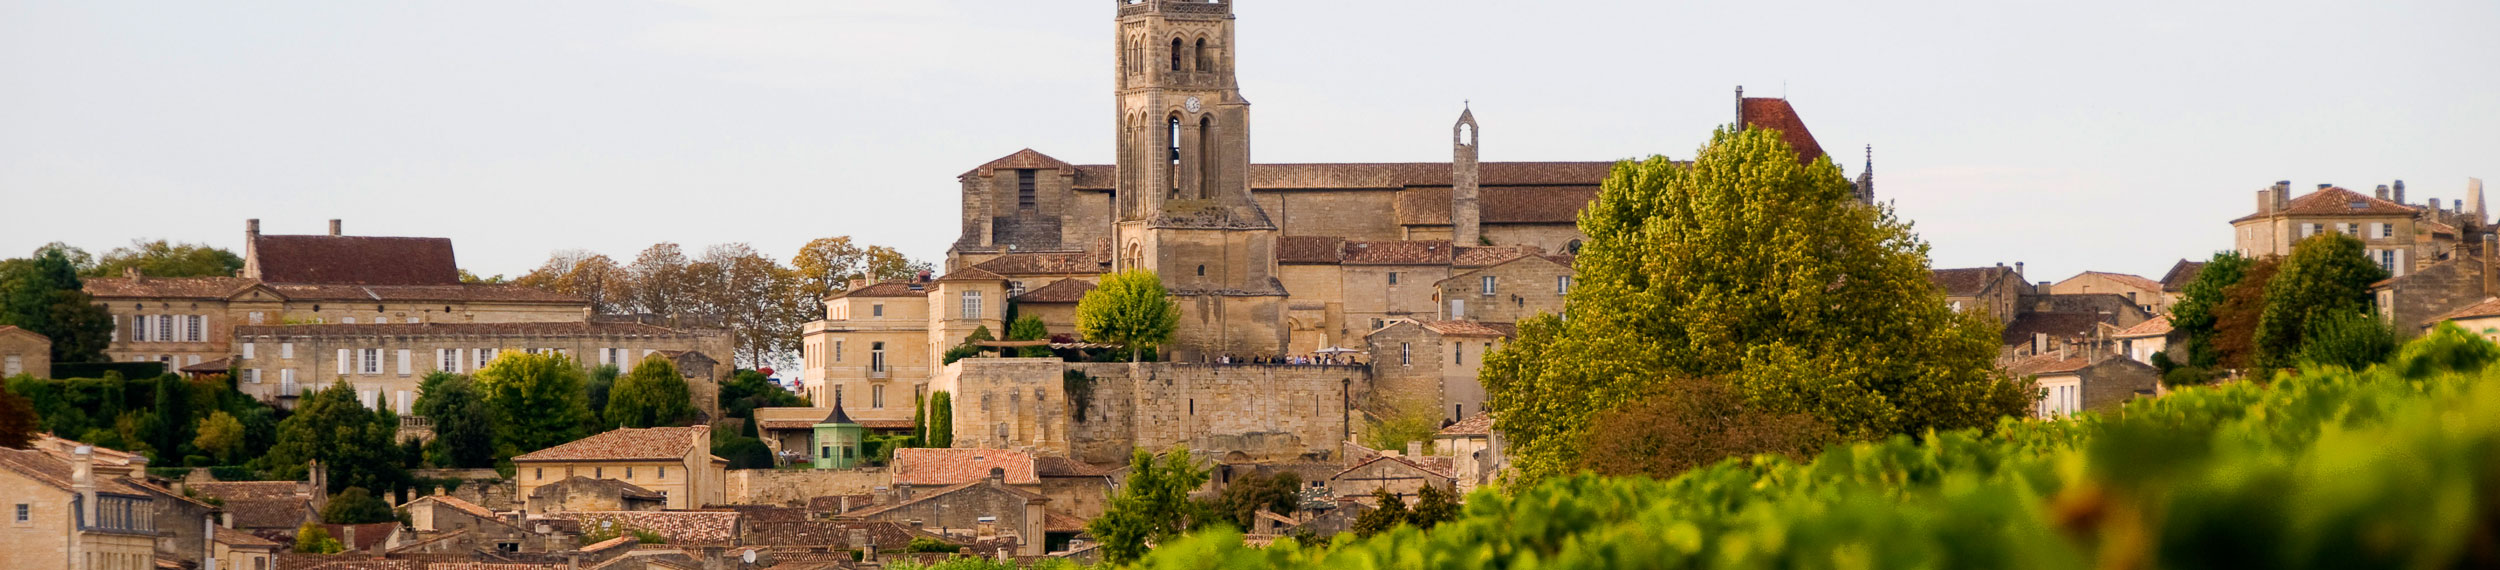 View of Saint-Émilion in Bordeaux, France. 